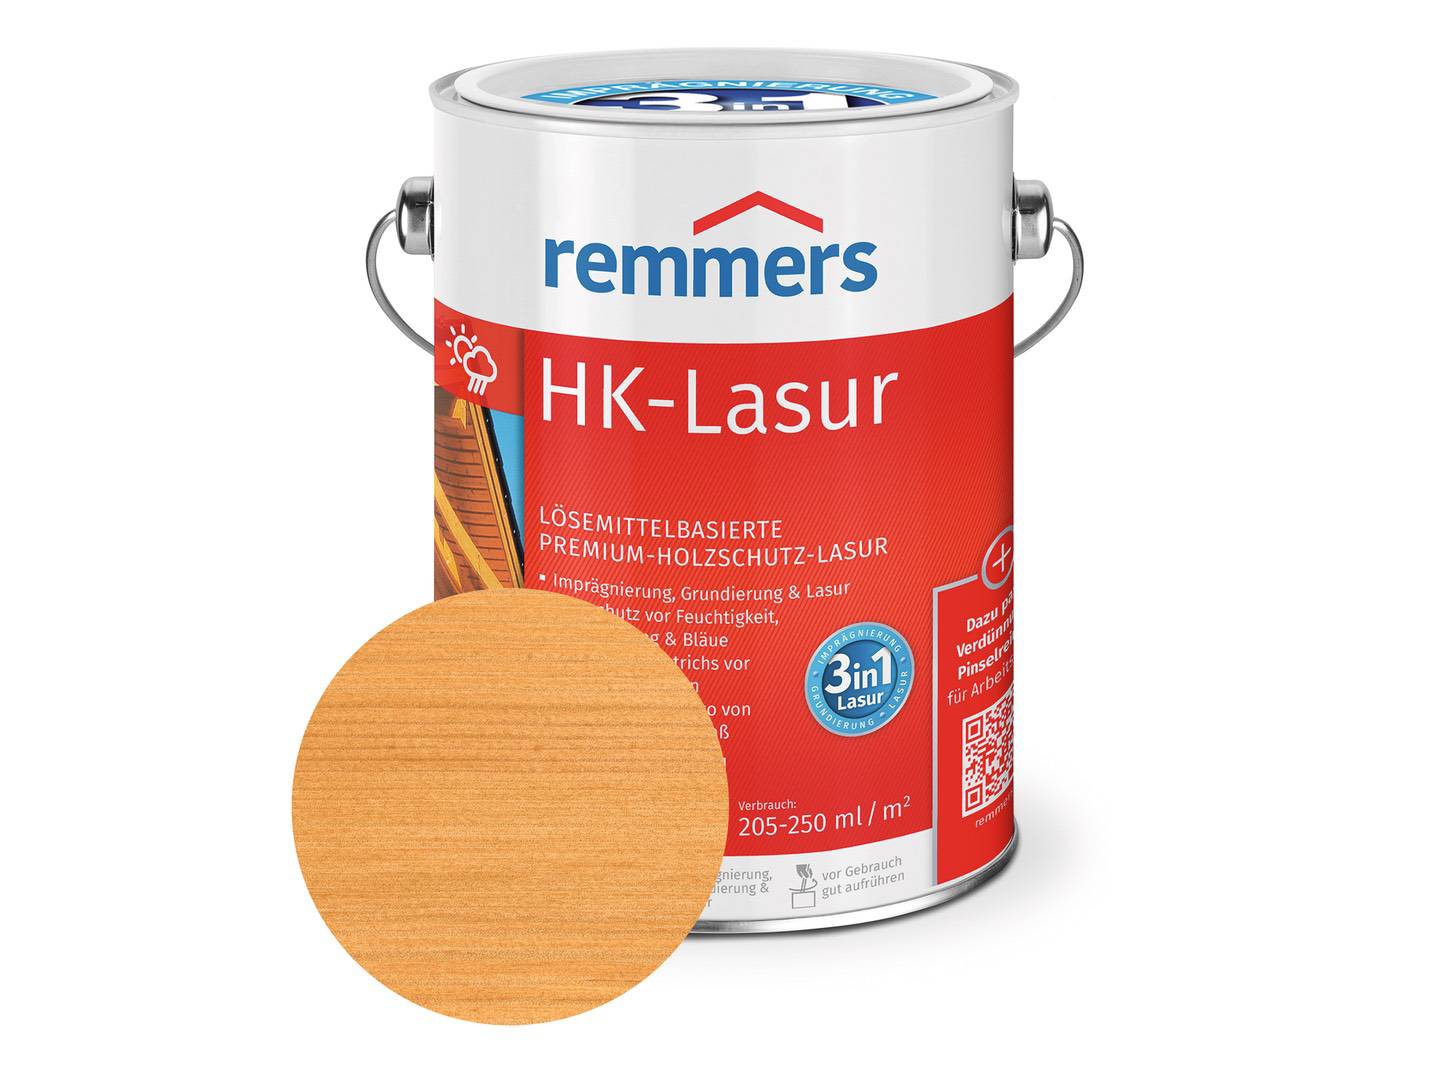 REMMERS HK-Lasur pinie/lärche (RC-260) 2,5 l